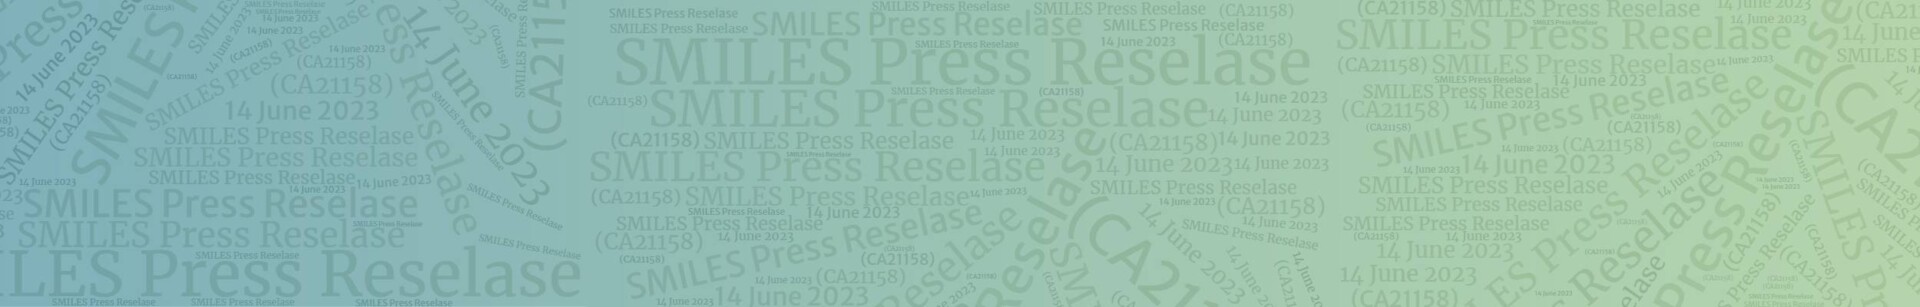 SMILES Press Reselase